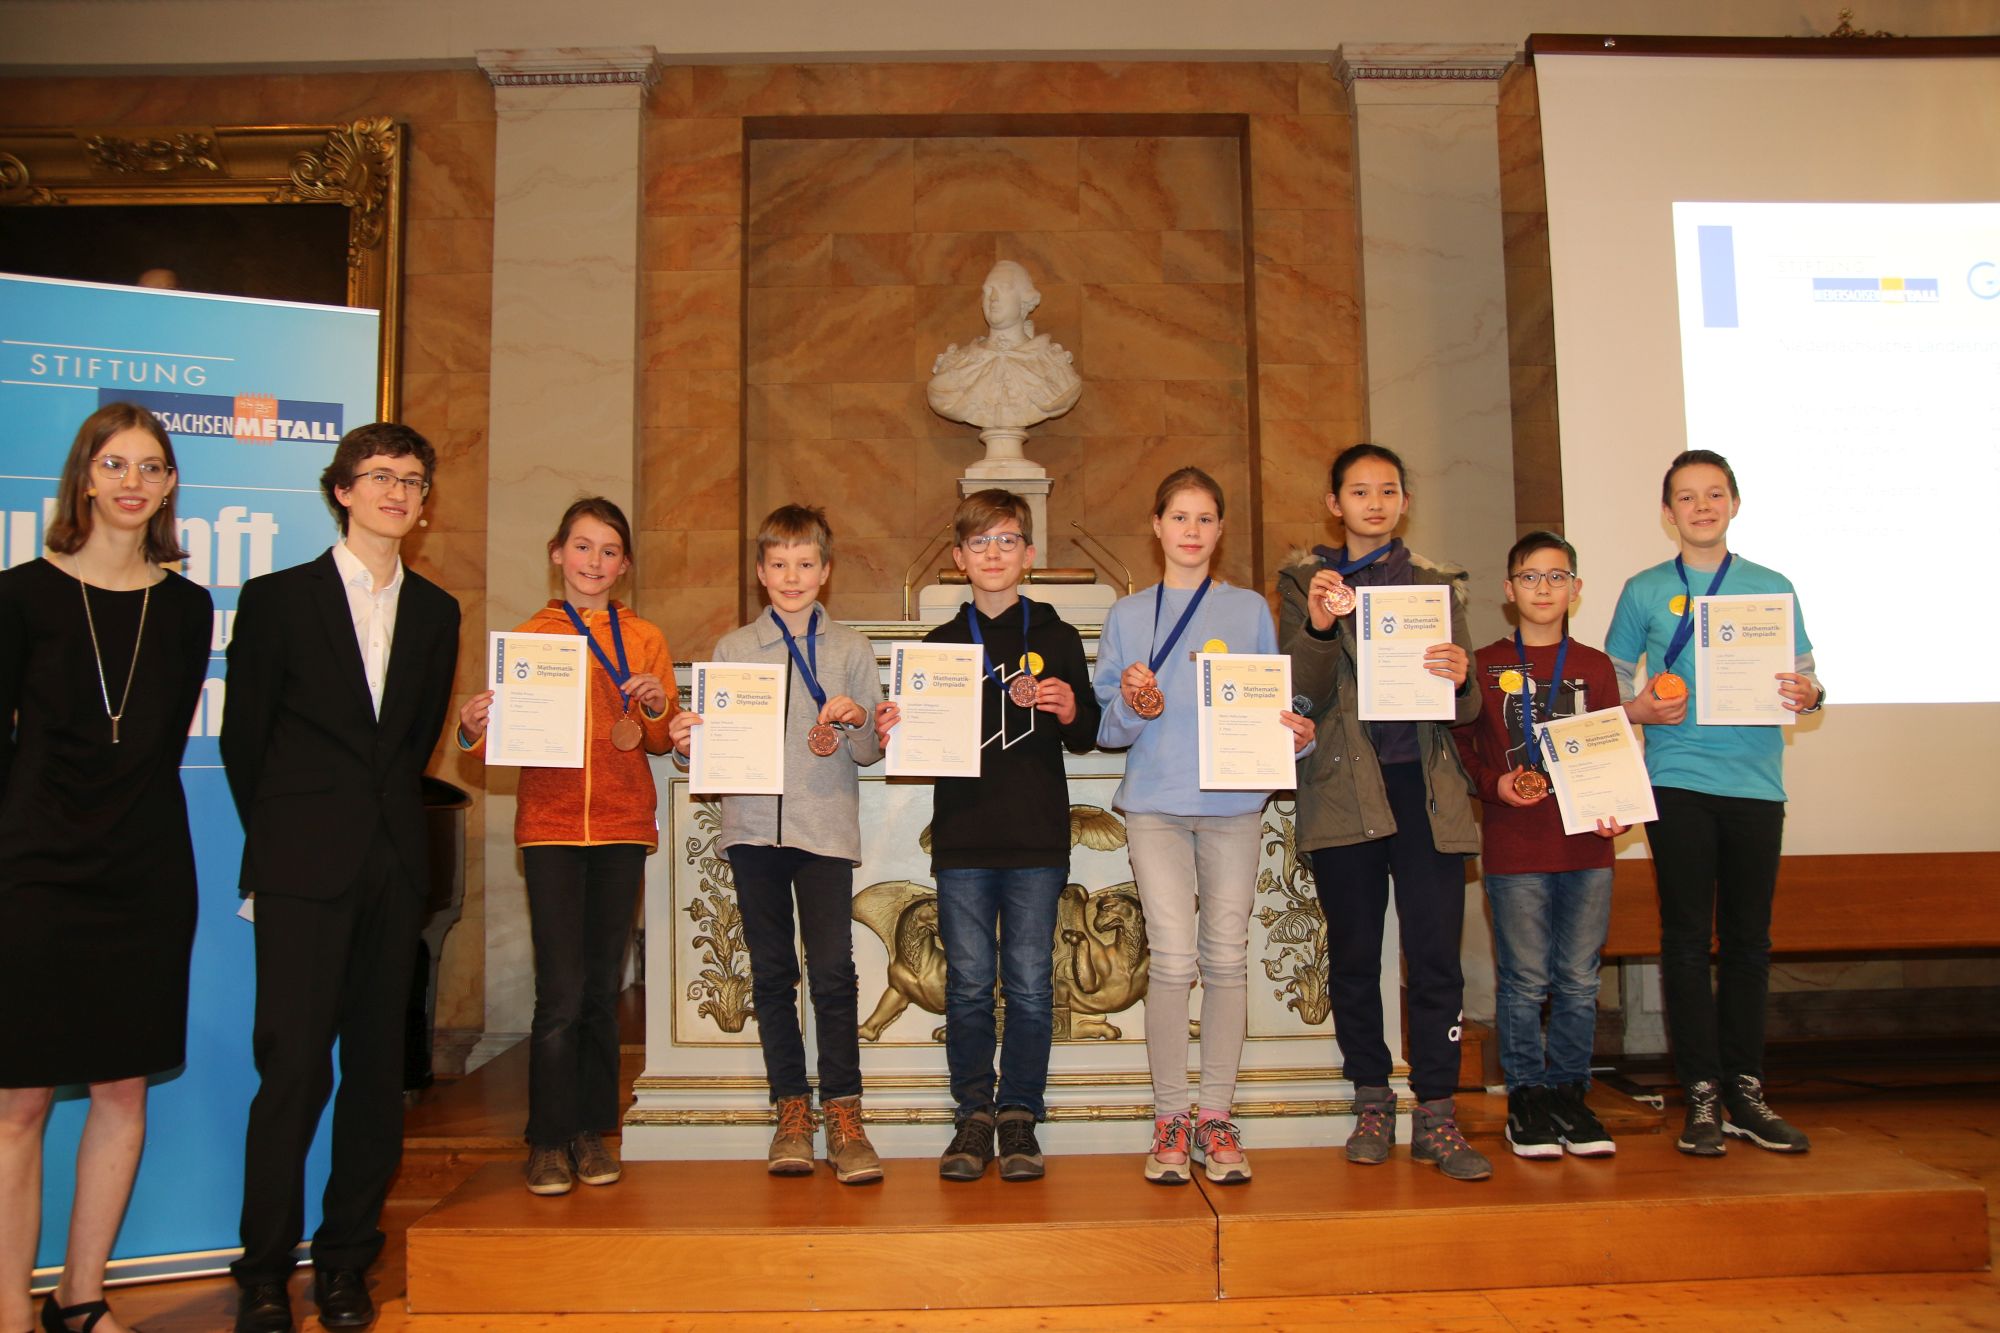 Merle Hofschröer gewinnt Bronze bei der Landesrunde der Mathematik Olympiade in Göttingen